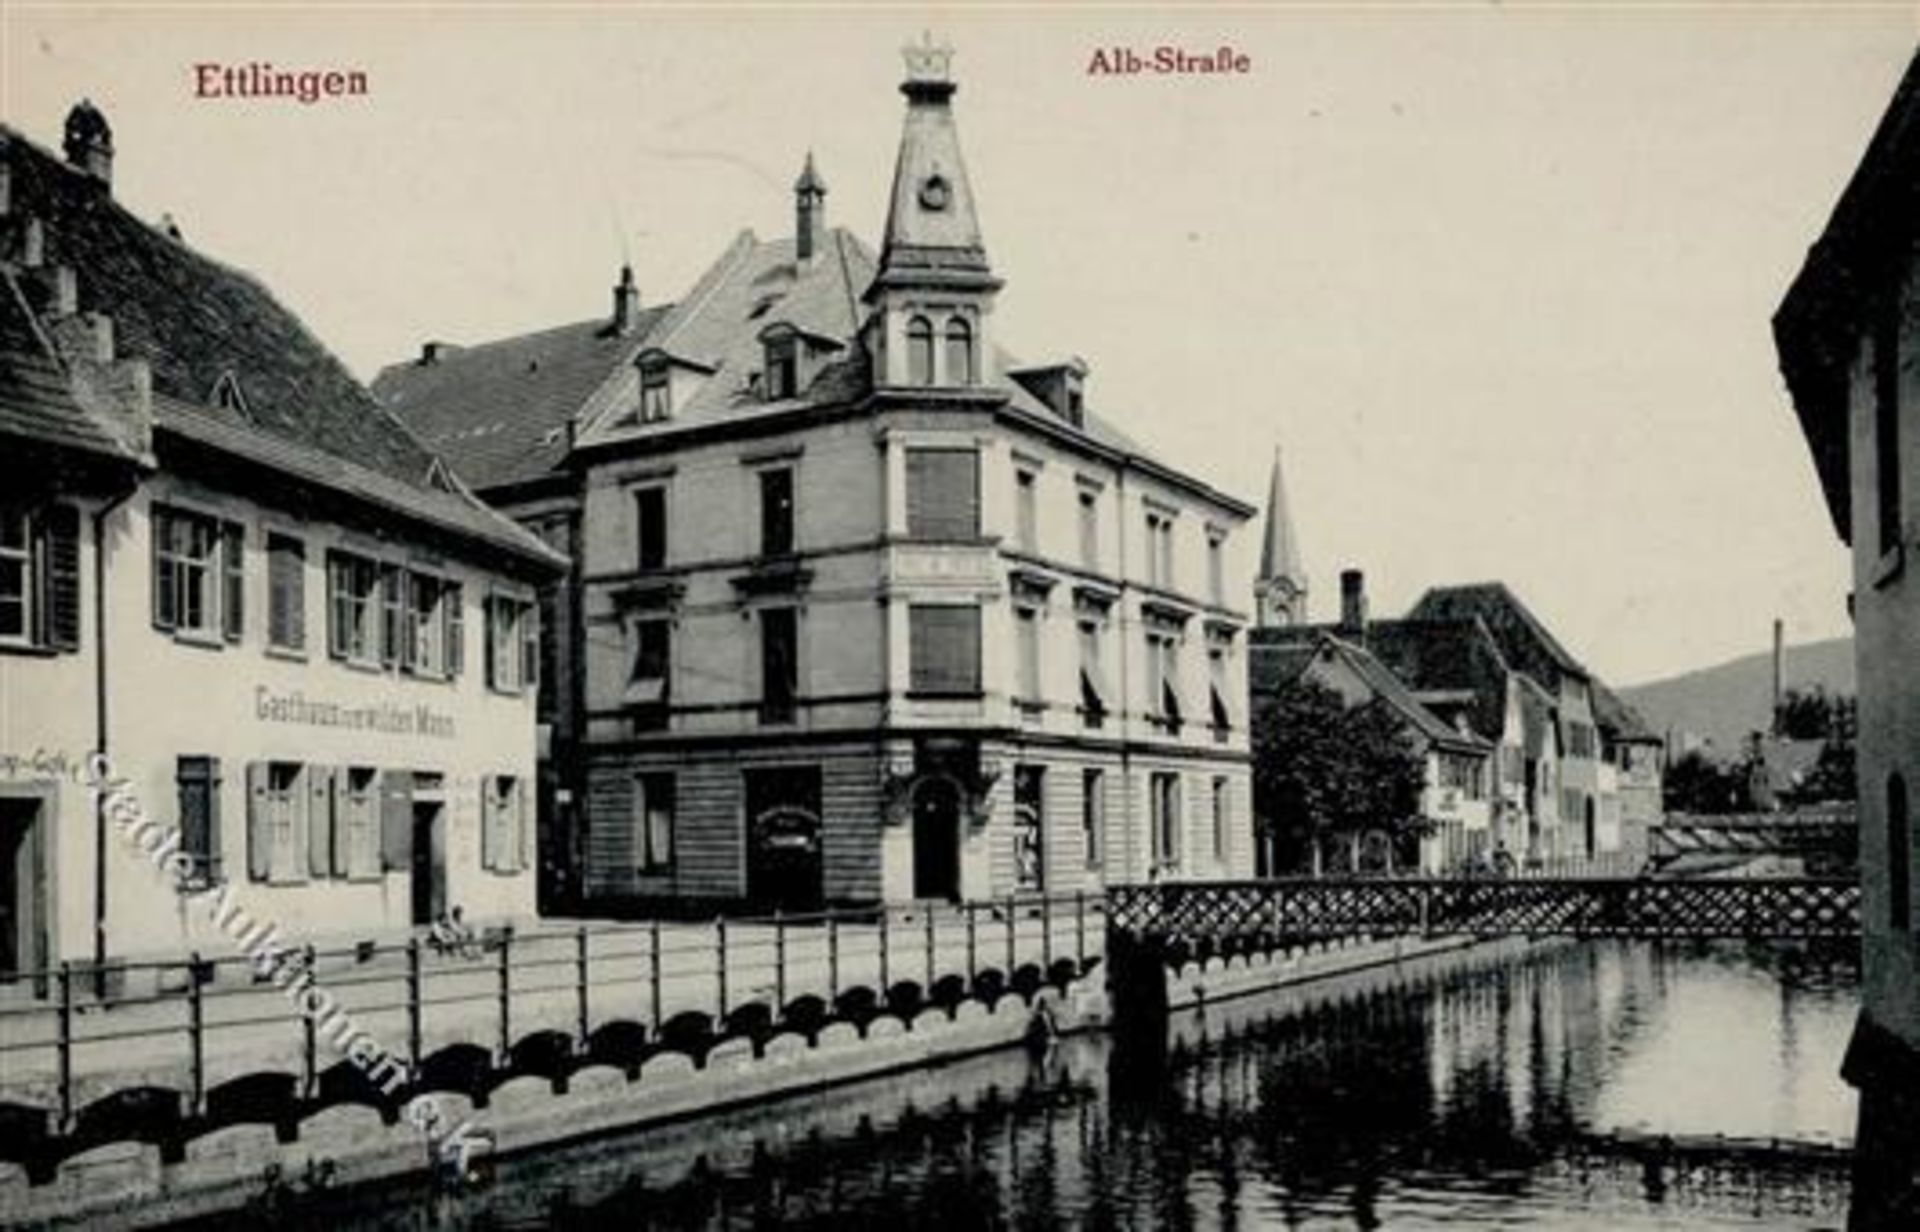 Ettlingen (7505) Albstrasse Gasthaus zum wilden Mann I-Dieses Los wird in einer online-Auktion